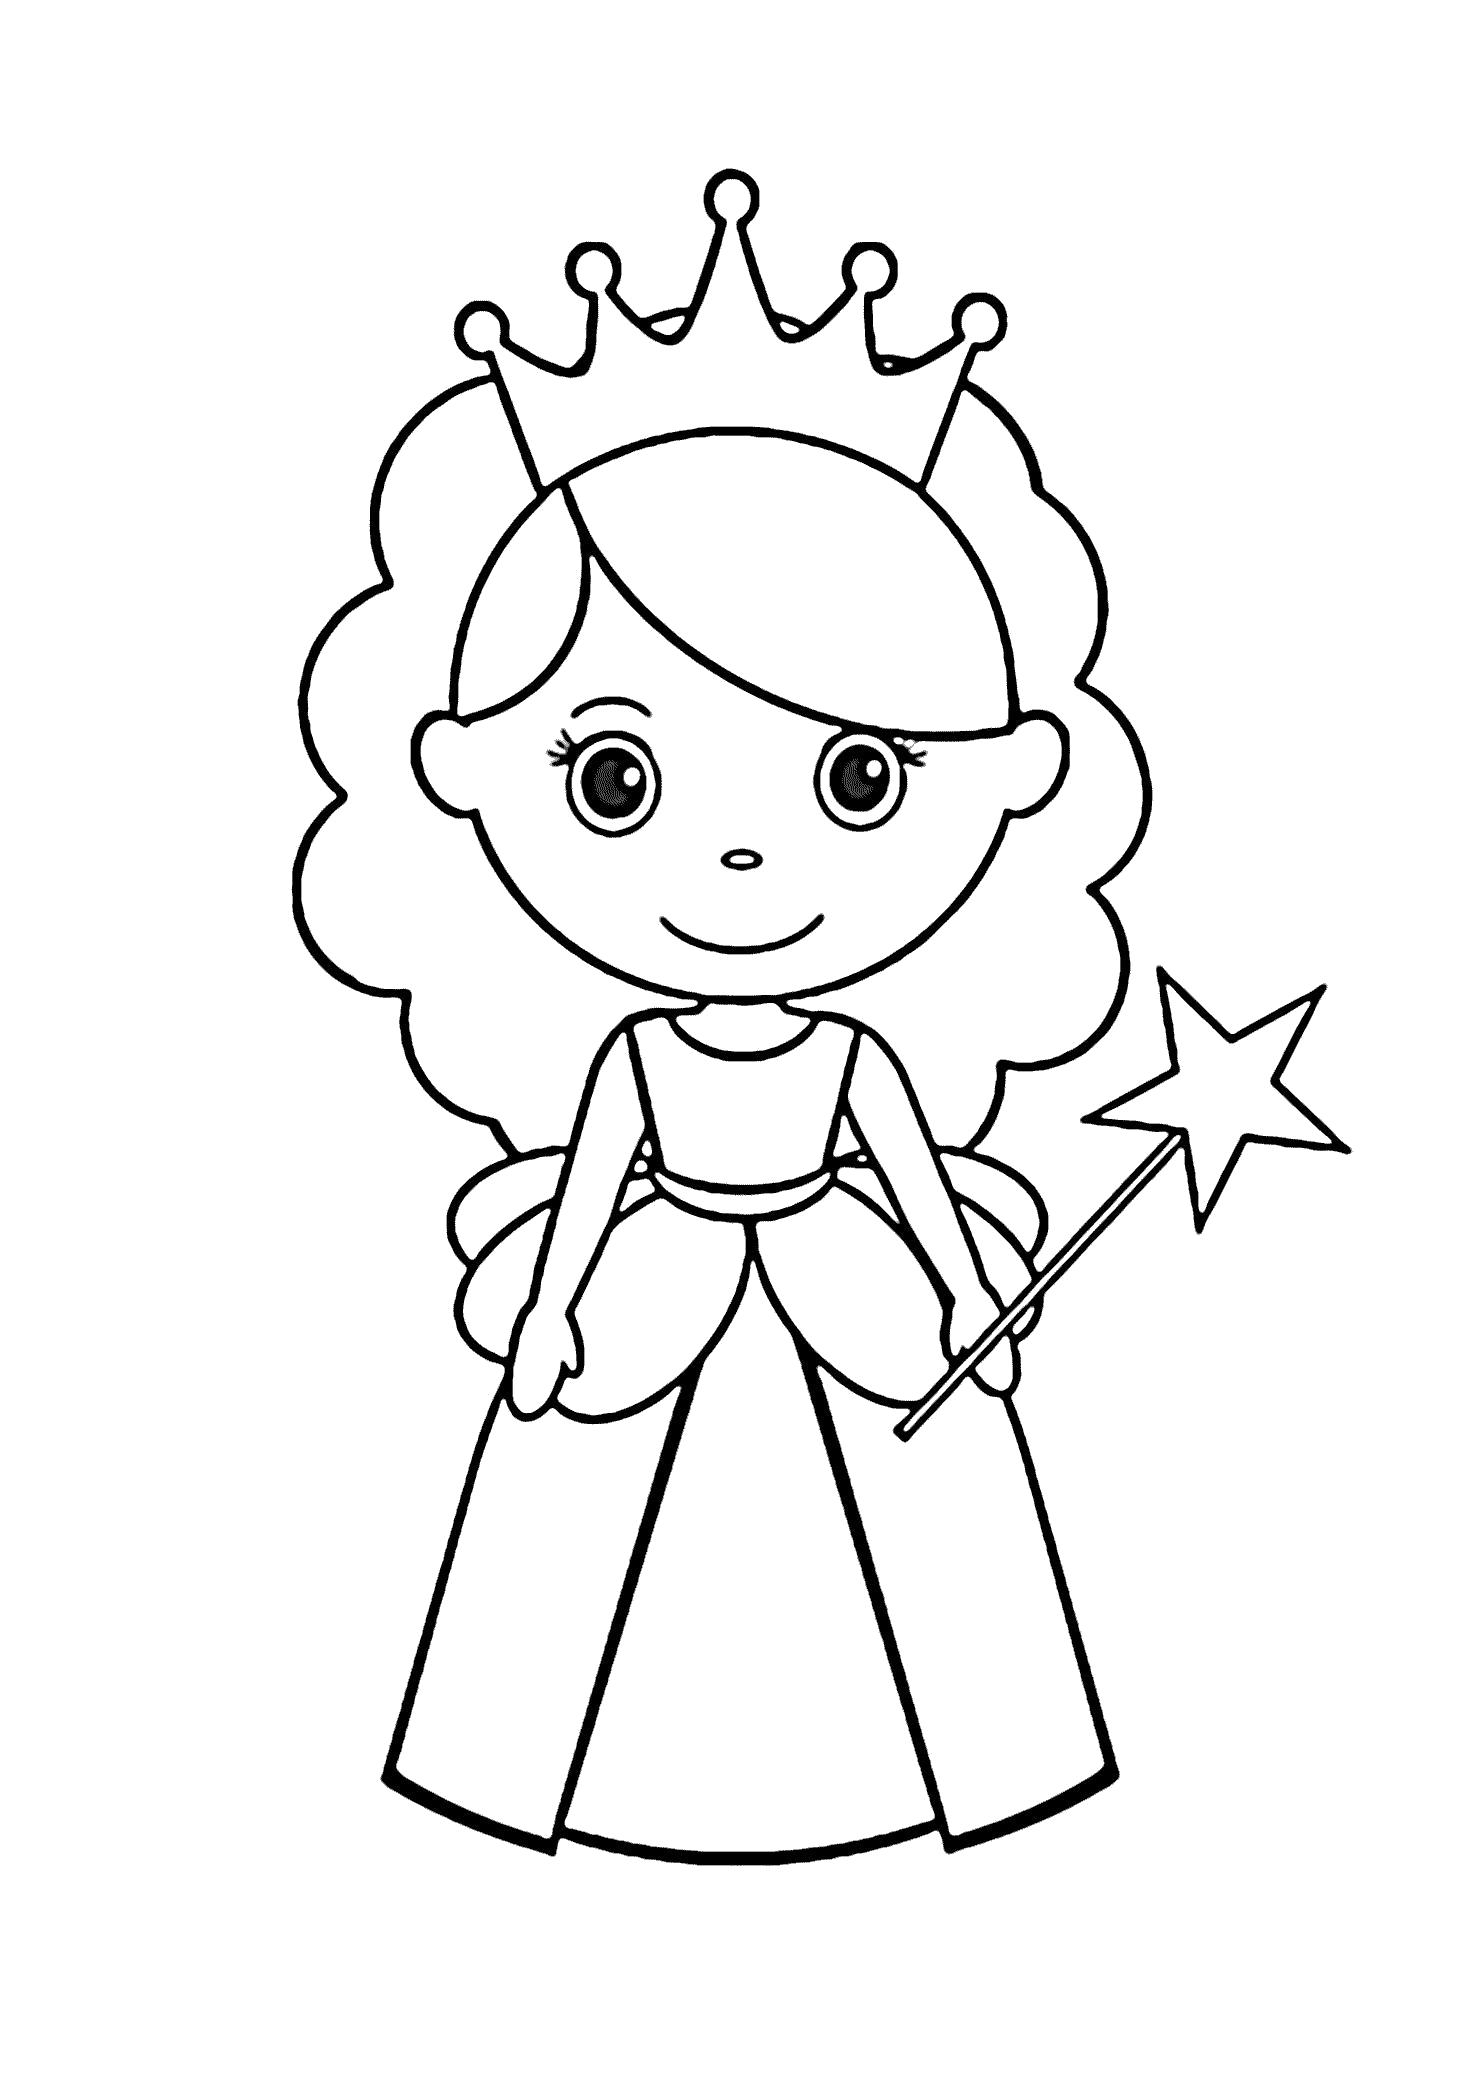 Раскраска Принцесса Фея - раскраска для девочек (Распечатать/Скачать). мифические существа